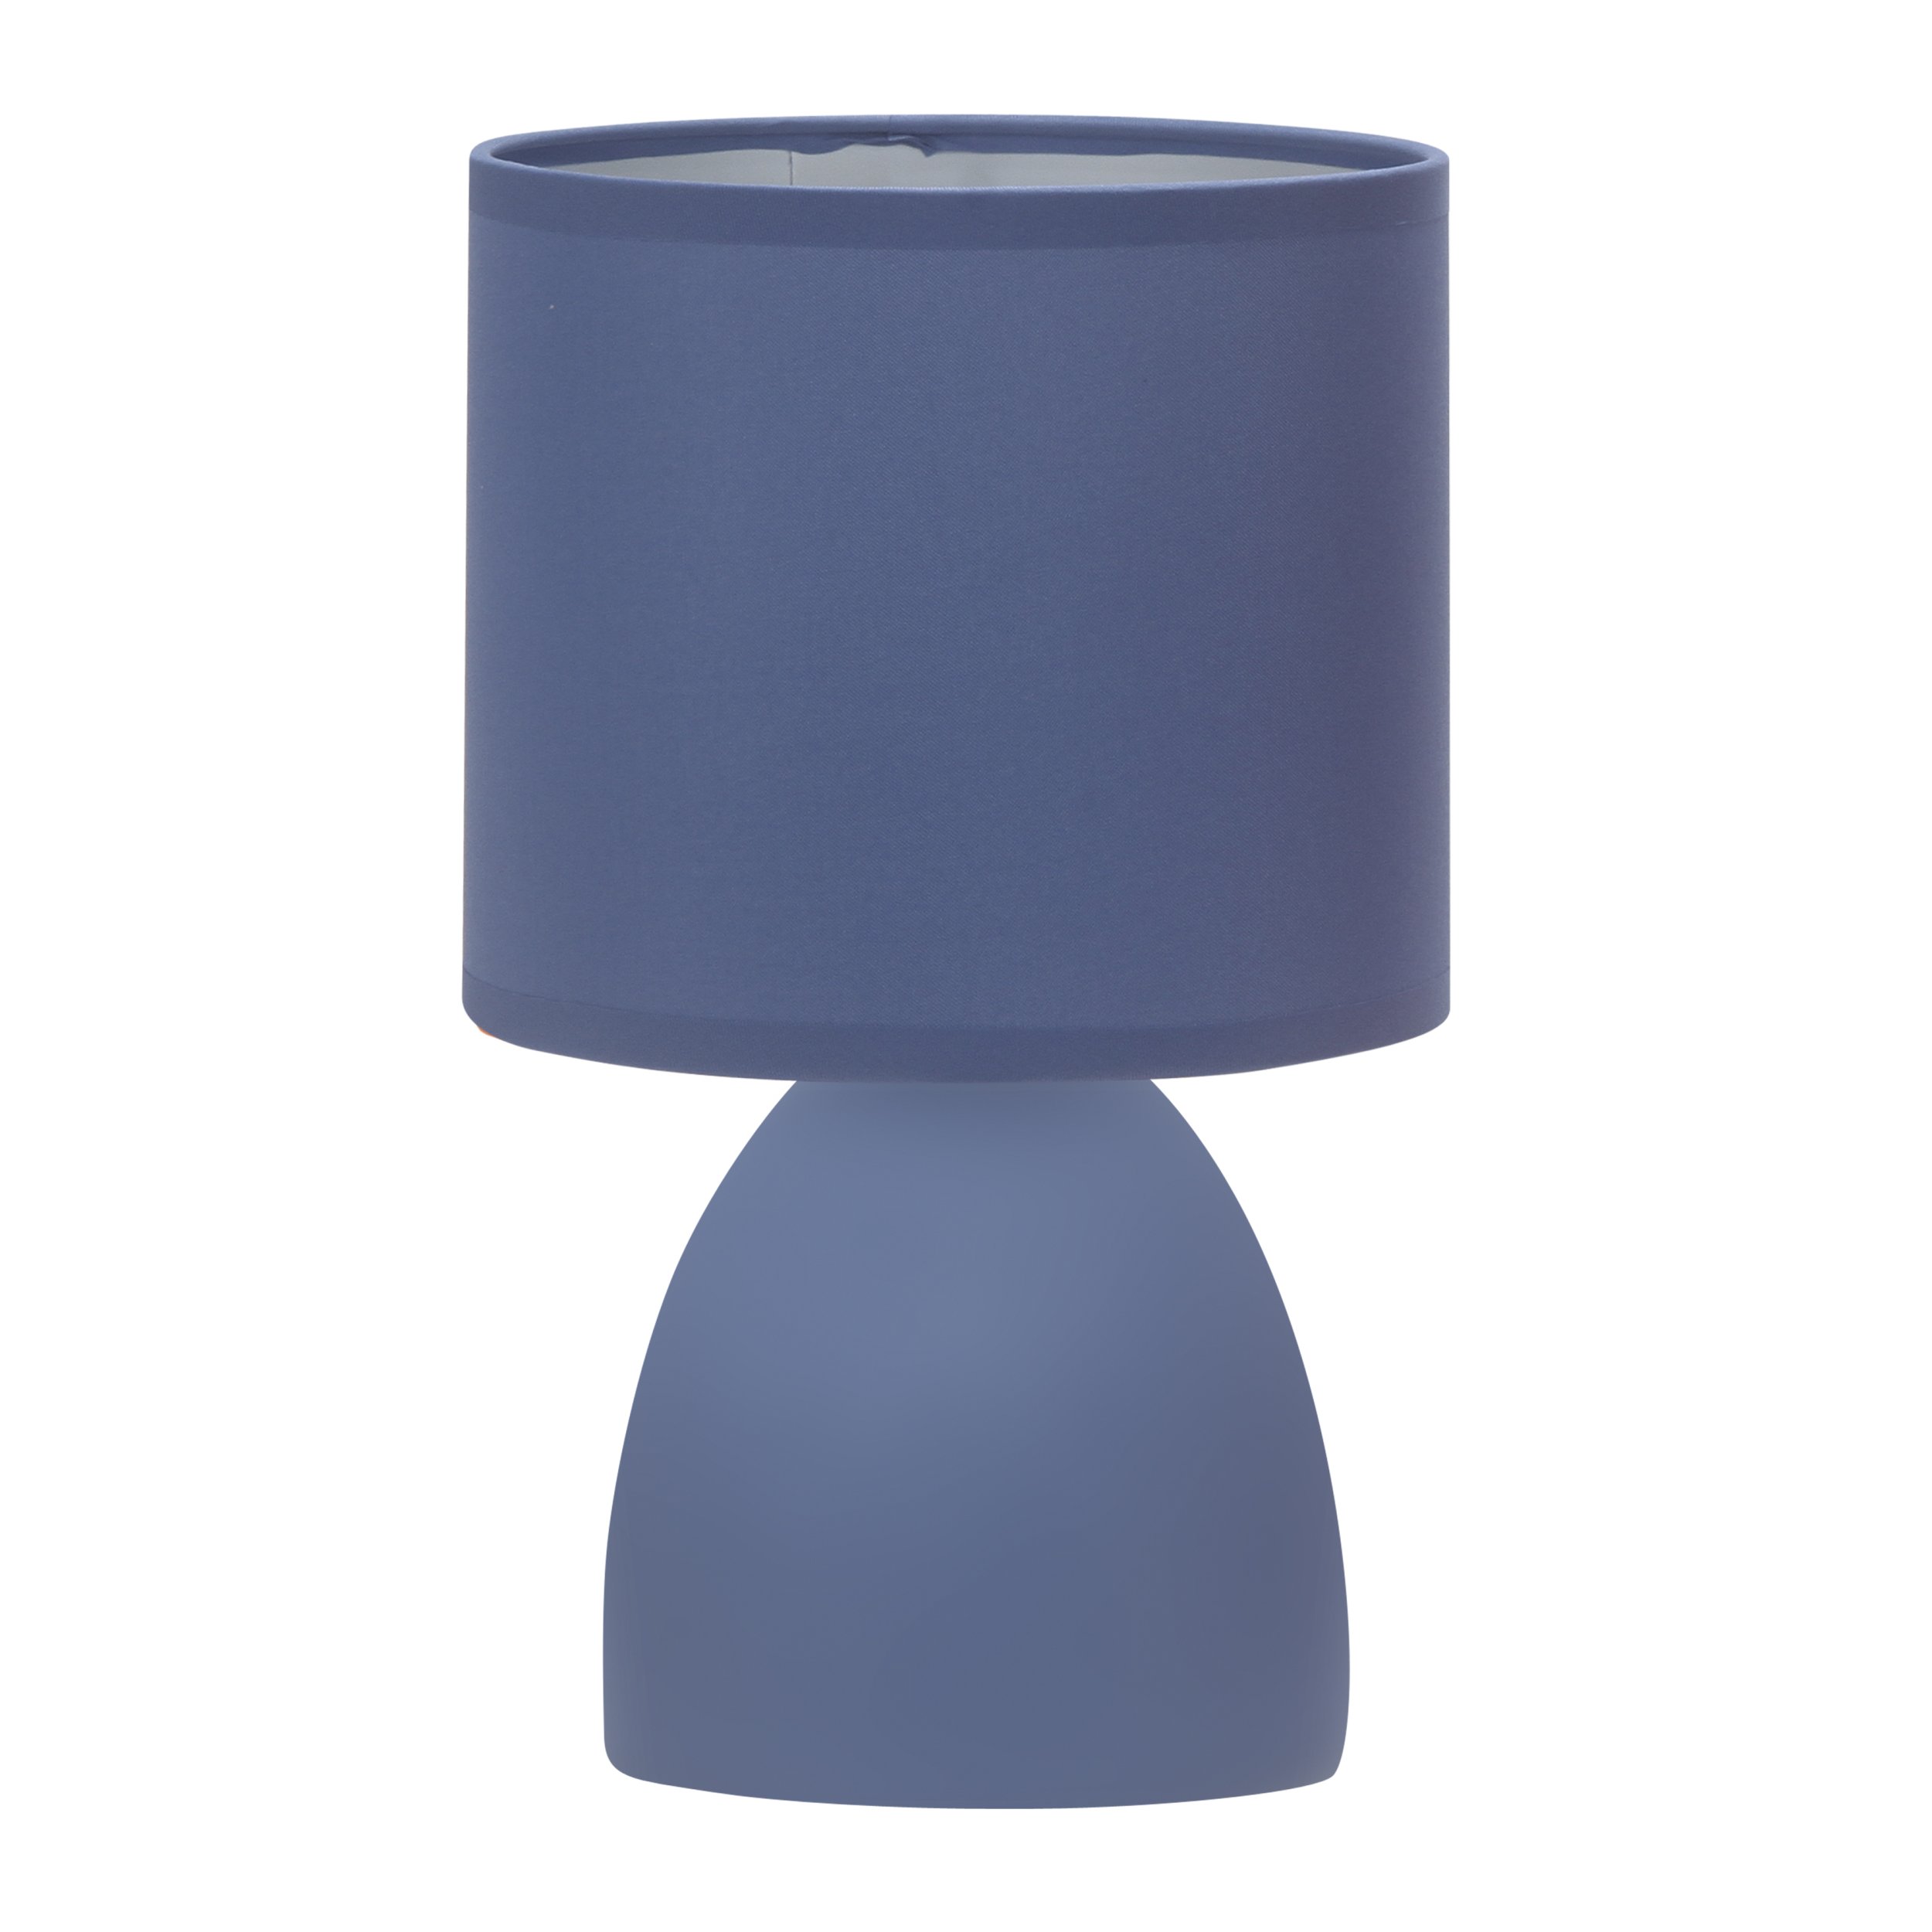 Декоративная настольная лампа Rivoli NADINE 7047-503, цвет синий 7047-503 Б0057258 - фото 1